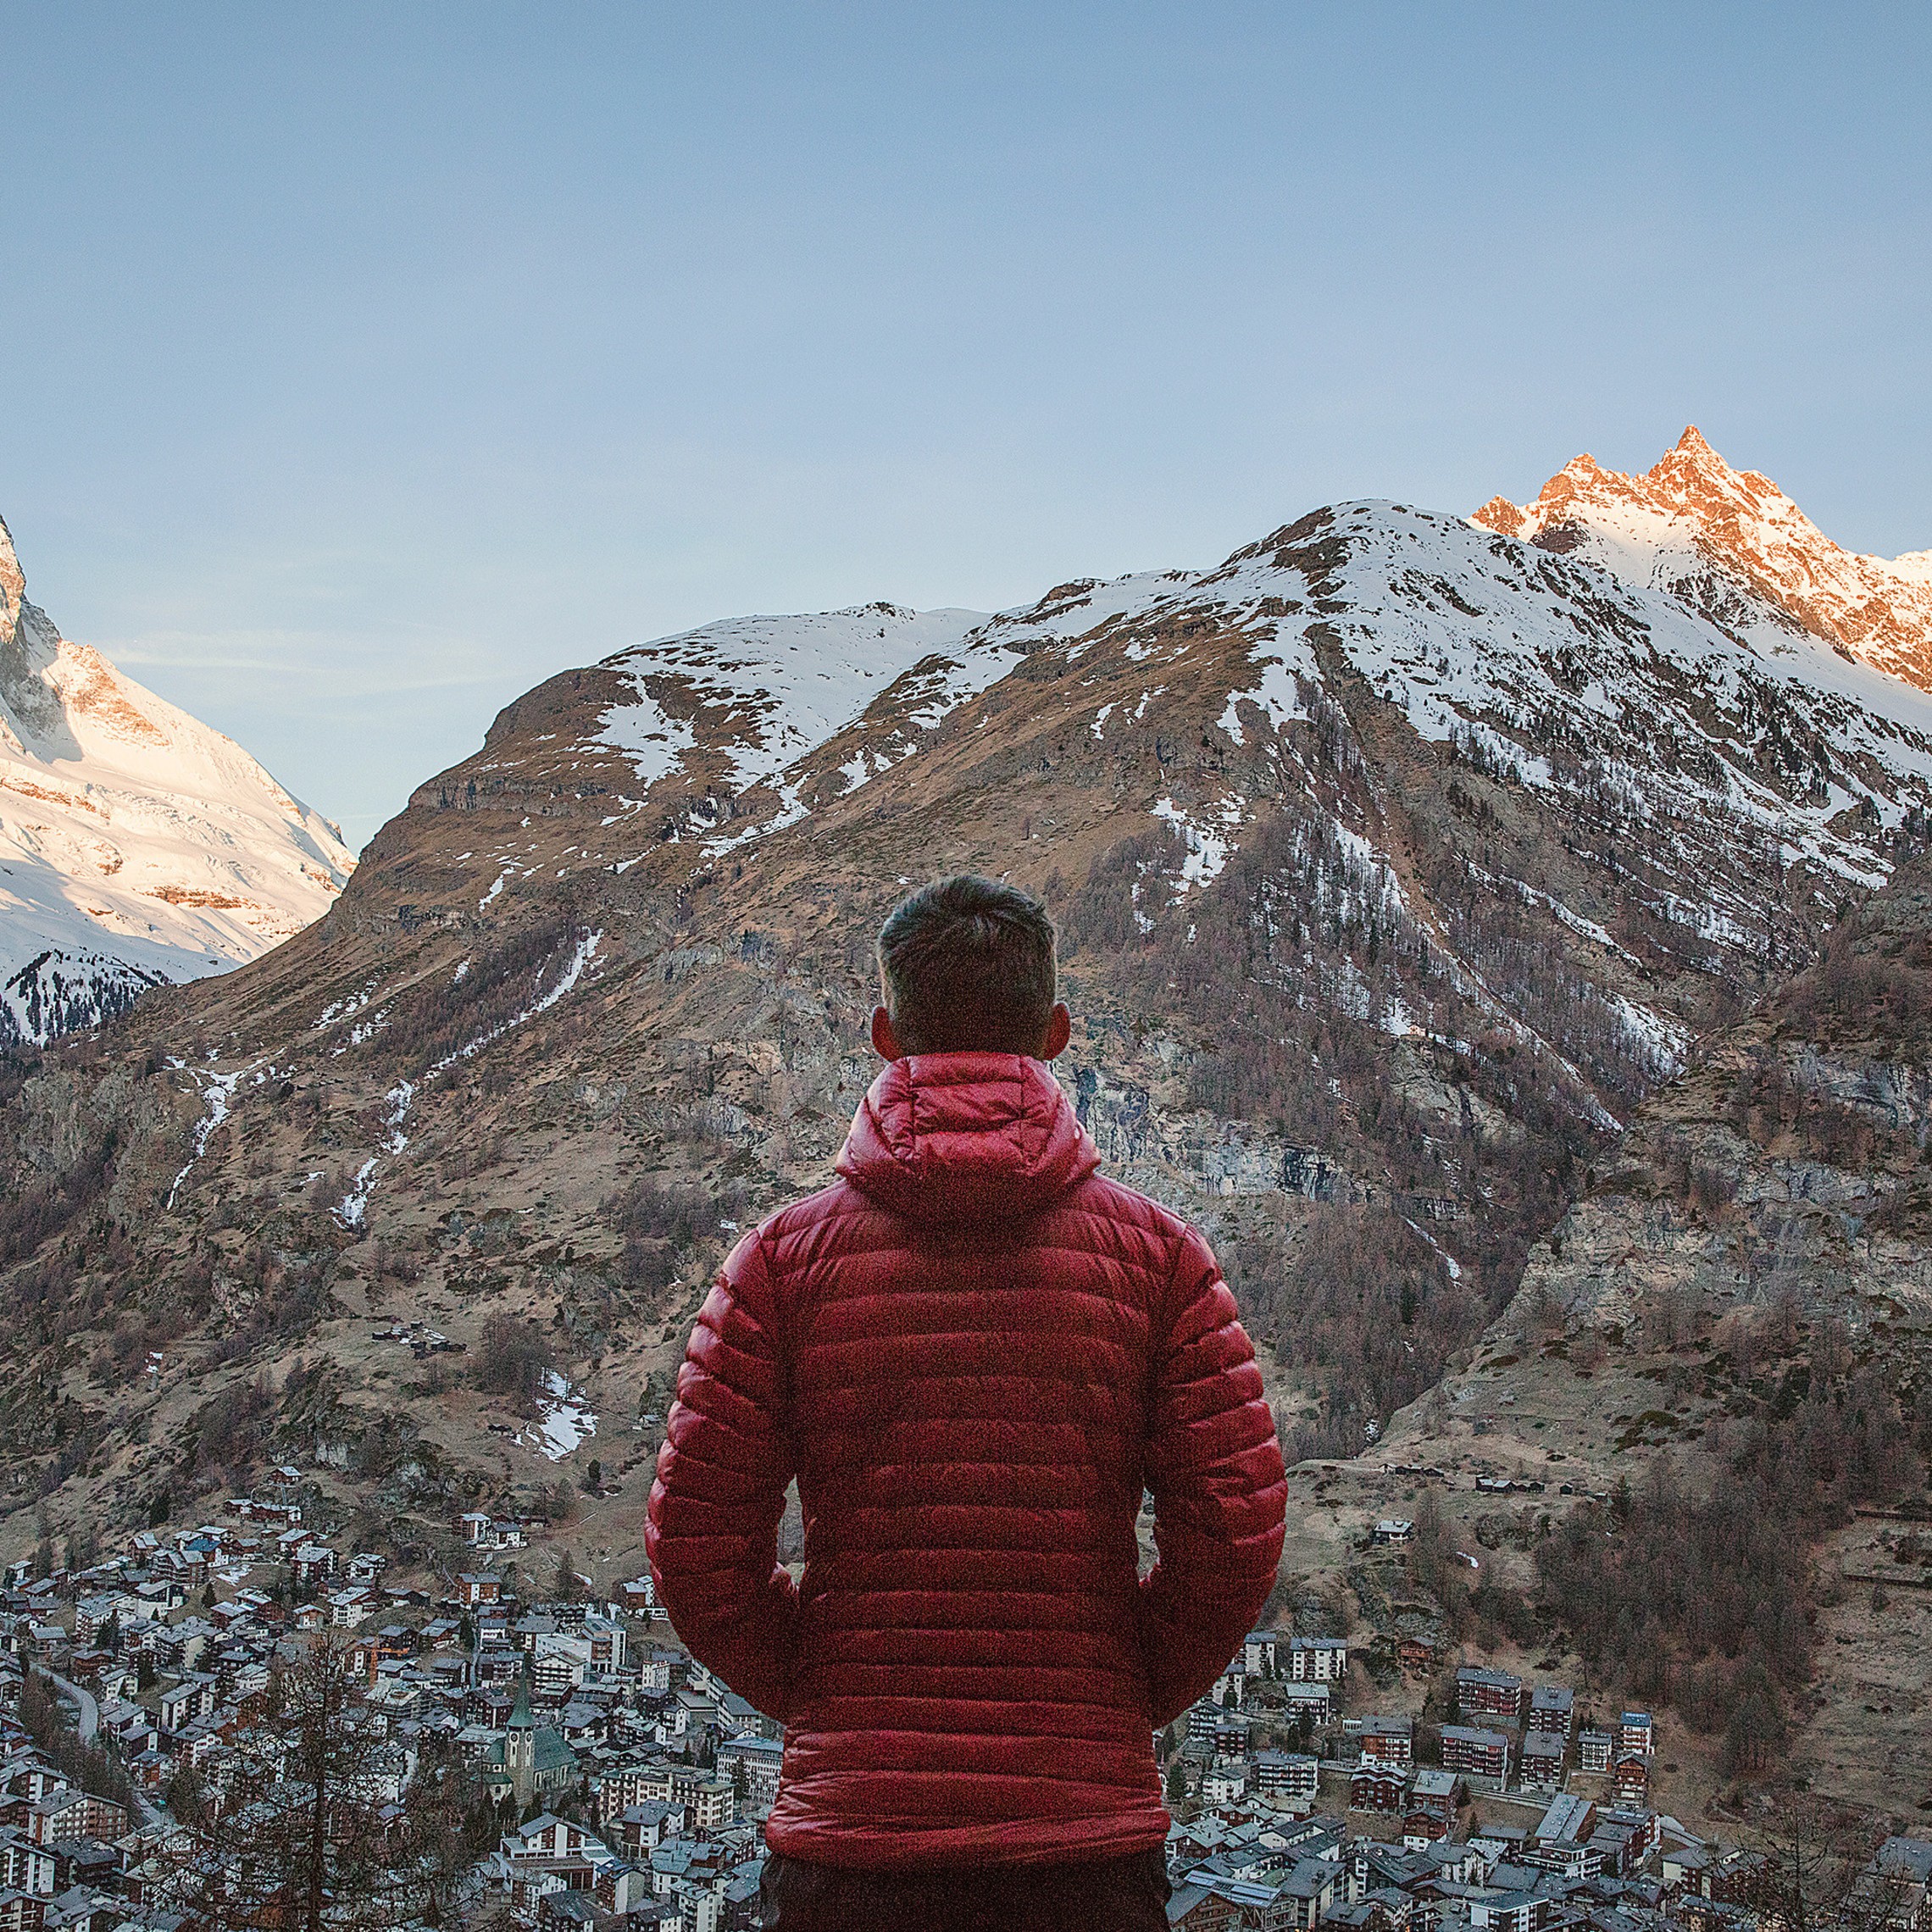 Man In Red Jacket Looking At The Alps In Zermatt Switzerland